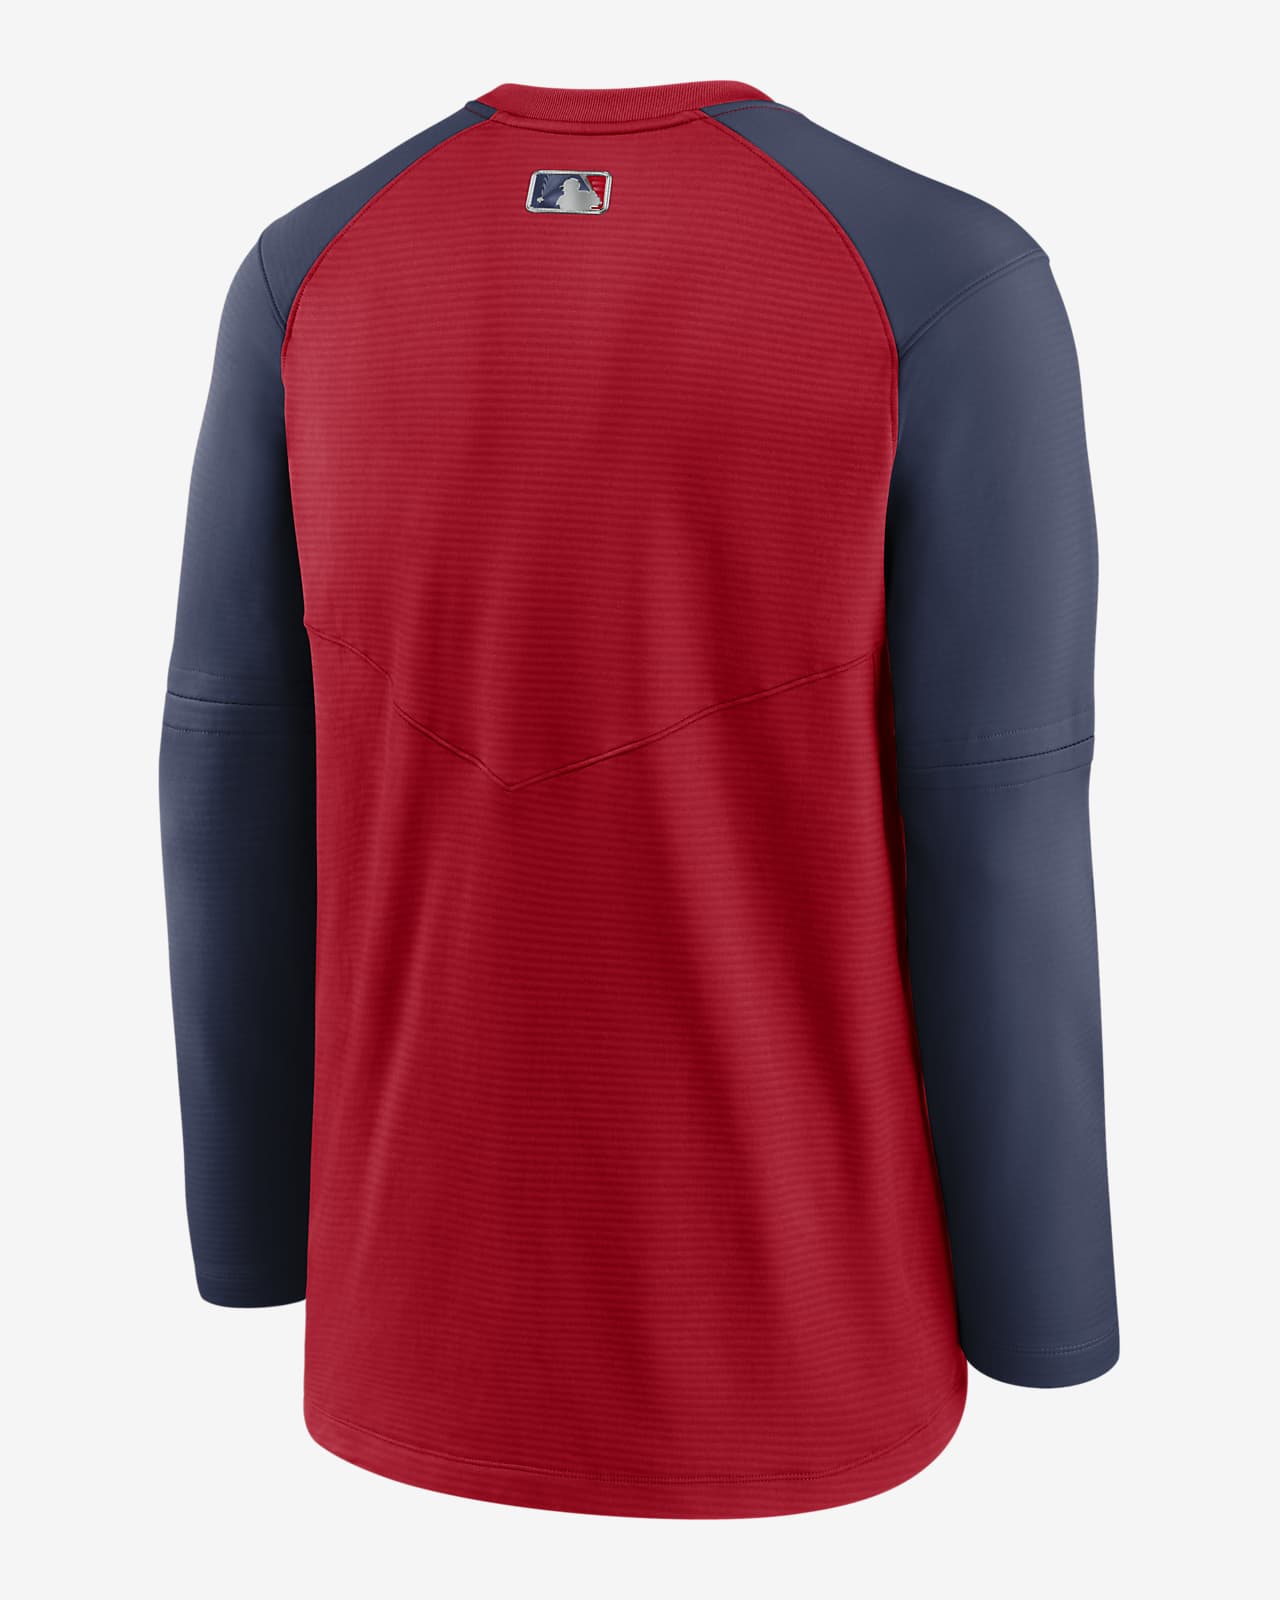 Nike, Shirts, St Louis Cardinals Nike Drifit Tshirt Red Large